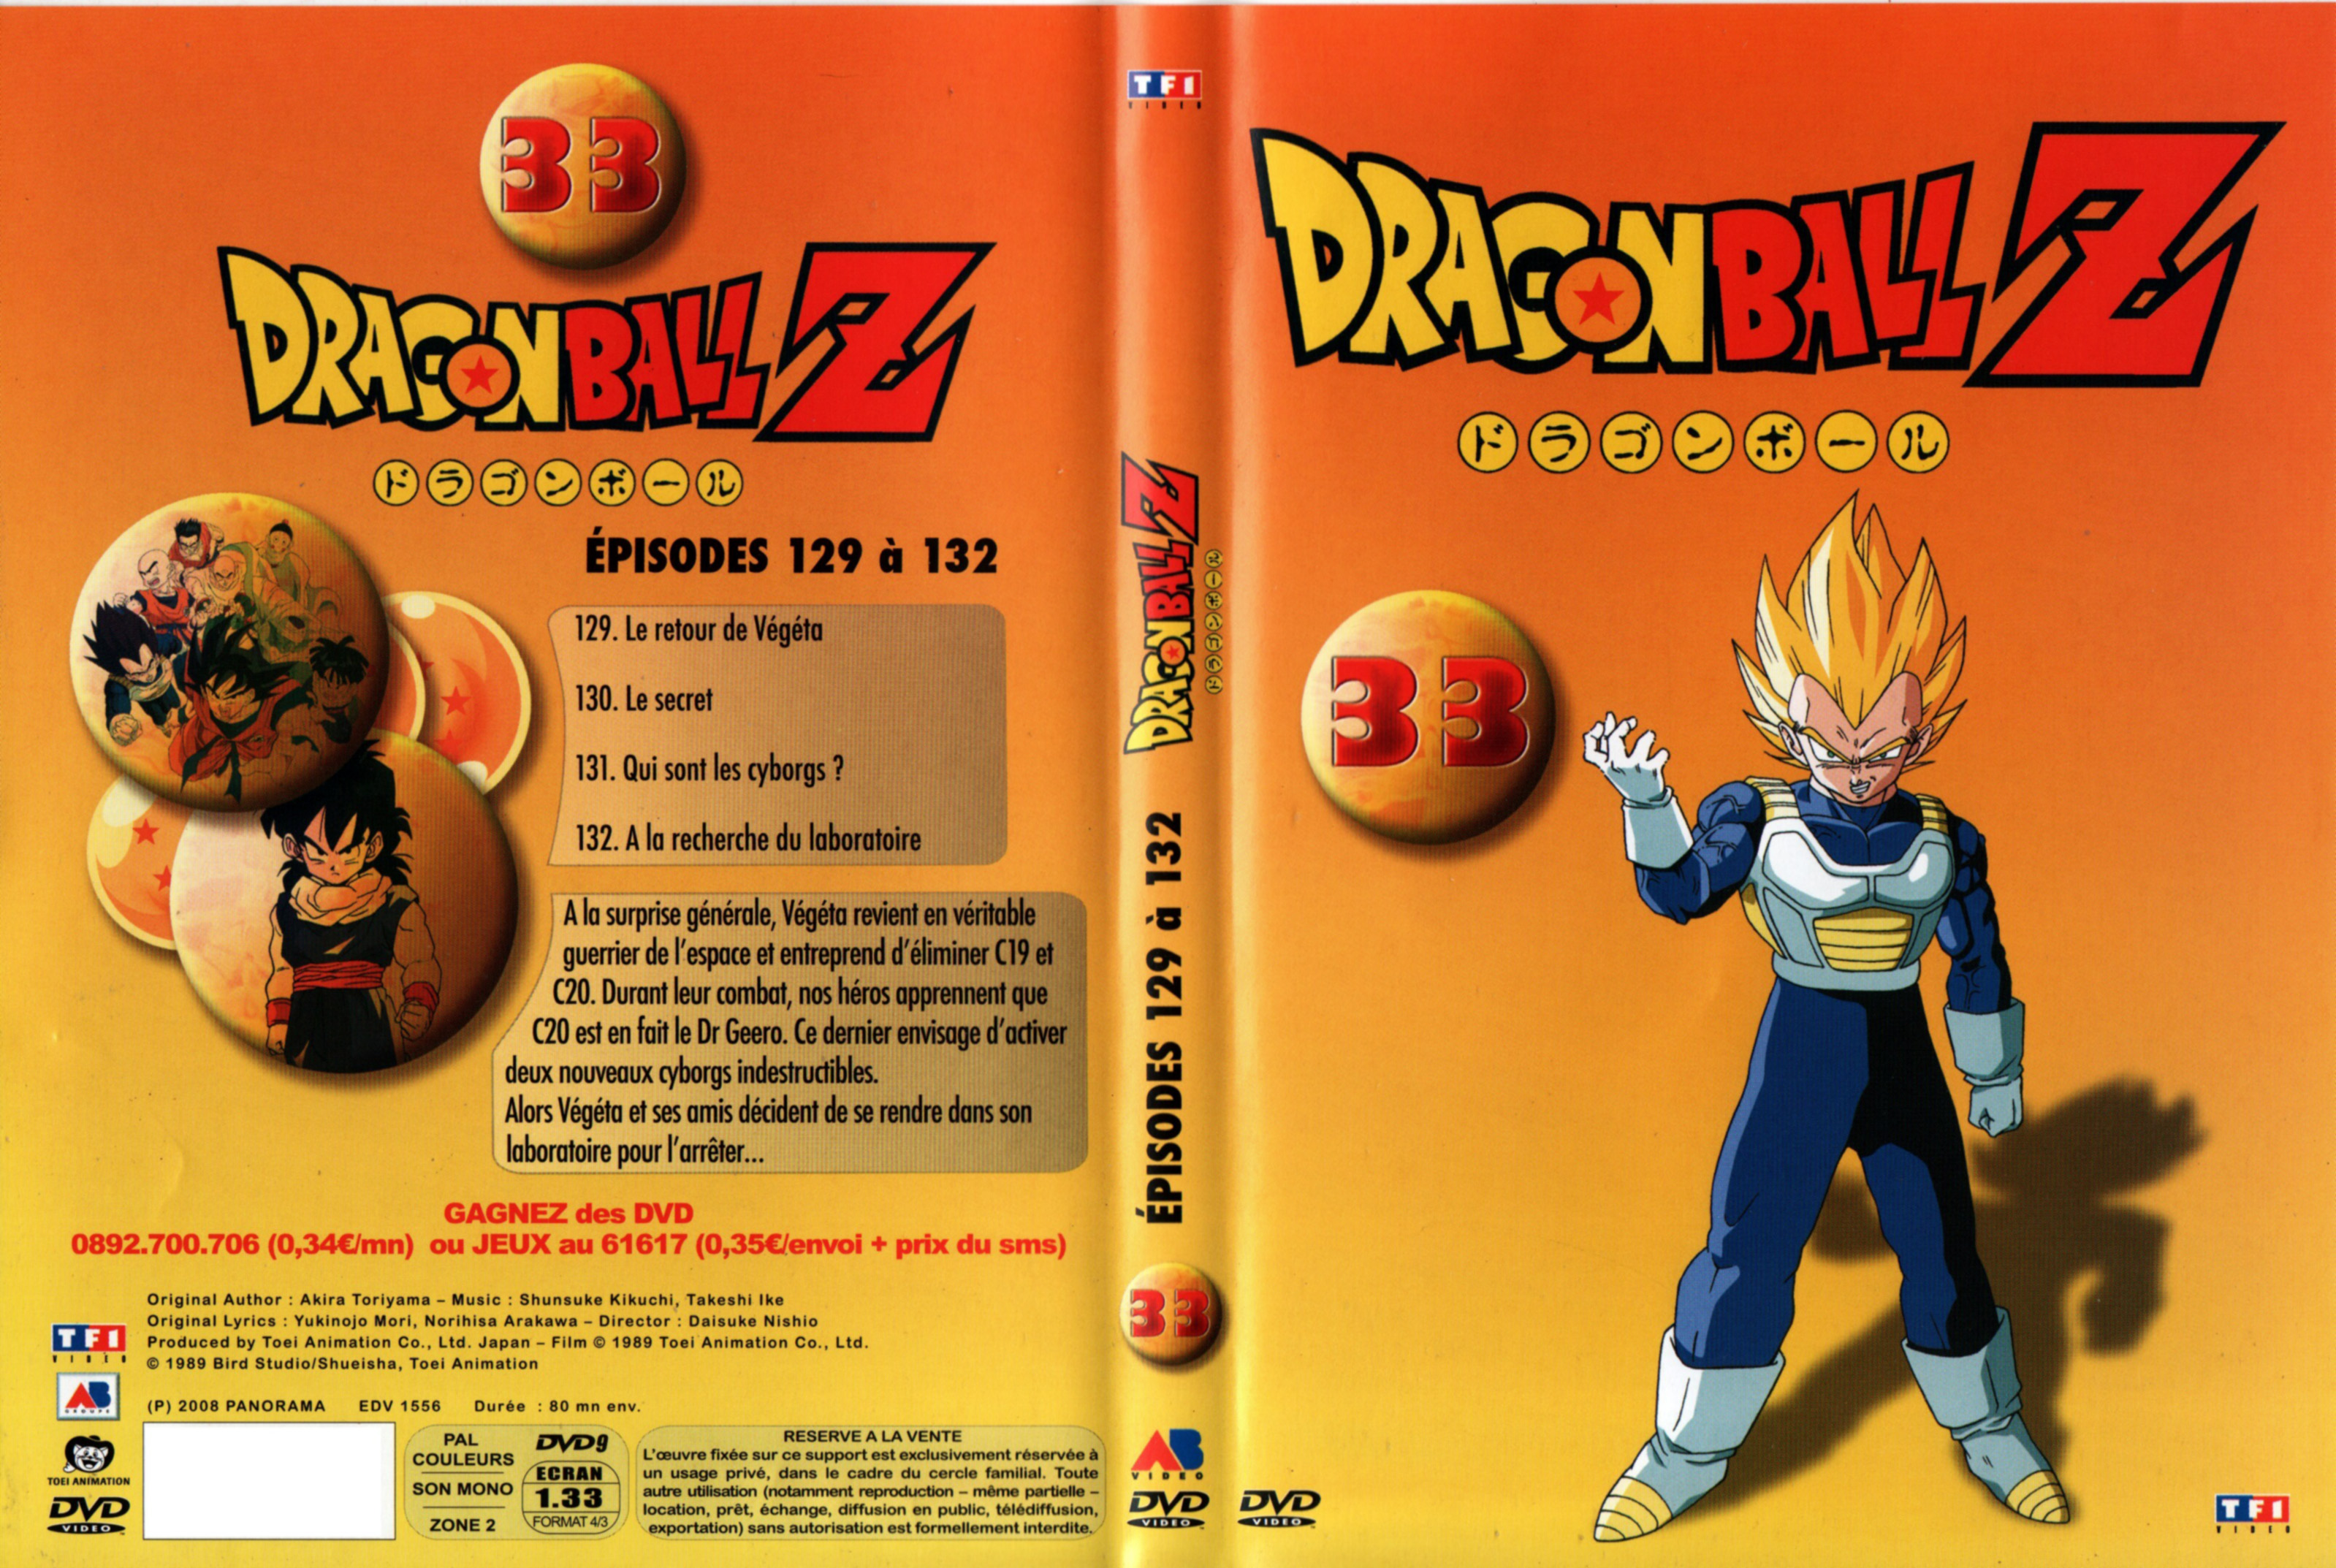 Jaquette DVD Dragon Ball Z vol 33 v2